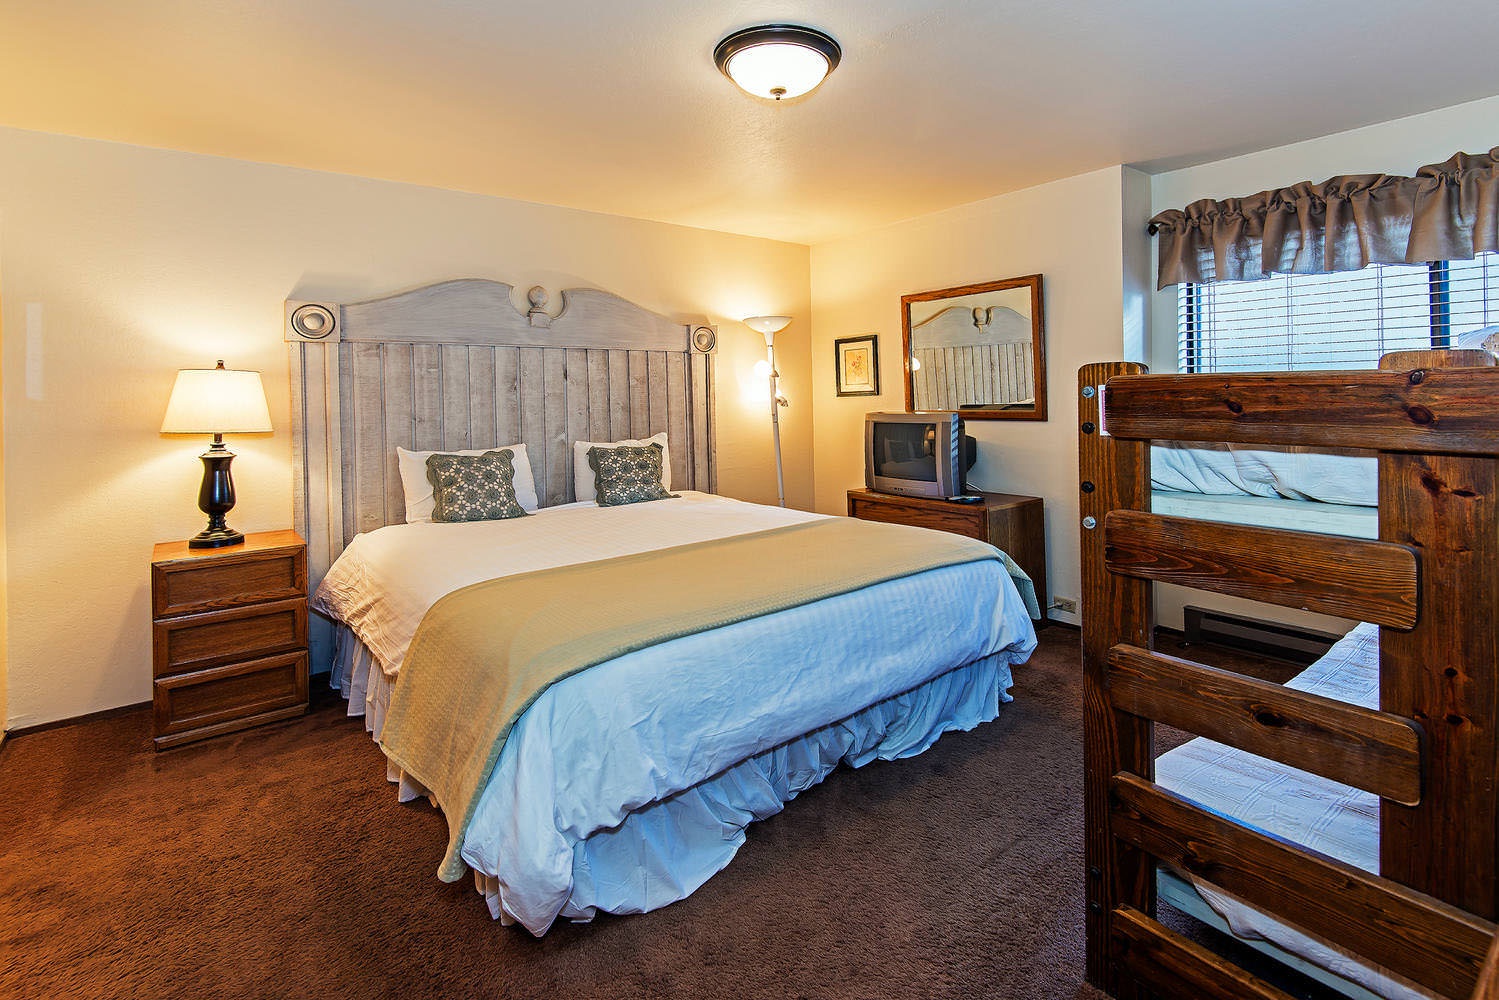 Guest bedroom: Queen bed, Twin bunkbed